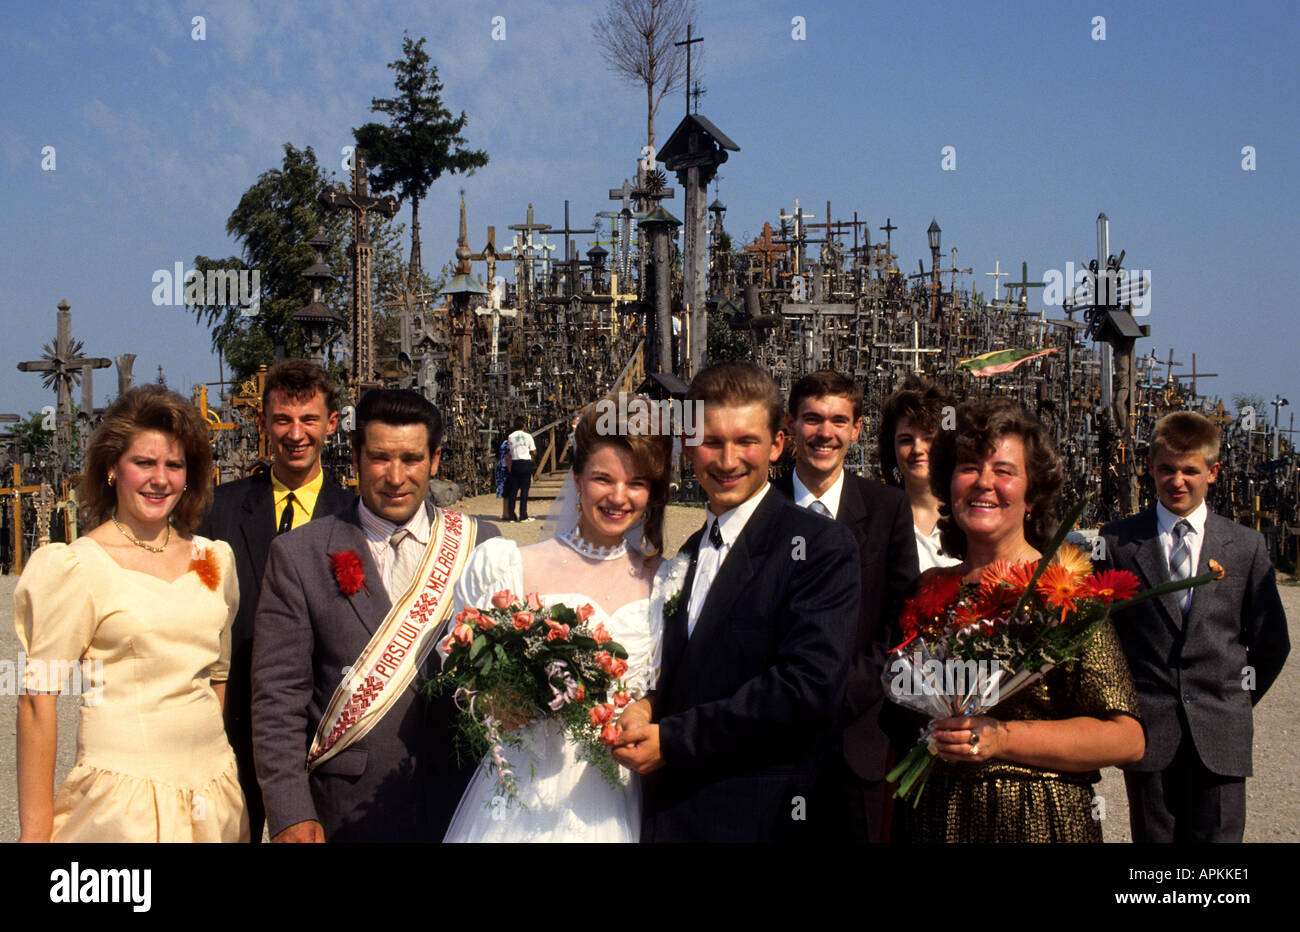 Hügel der Kreuze Siauliai Litauen Ehe Ehe Ehe Hochzeit Stockfoto